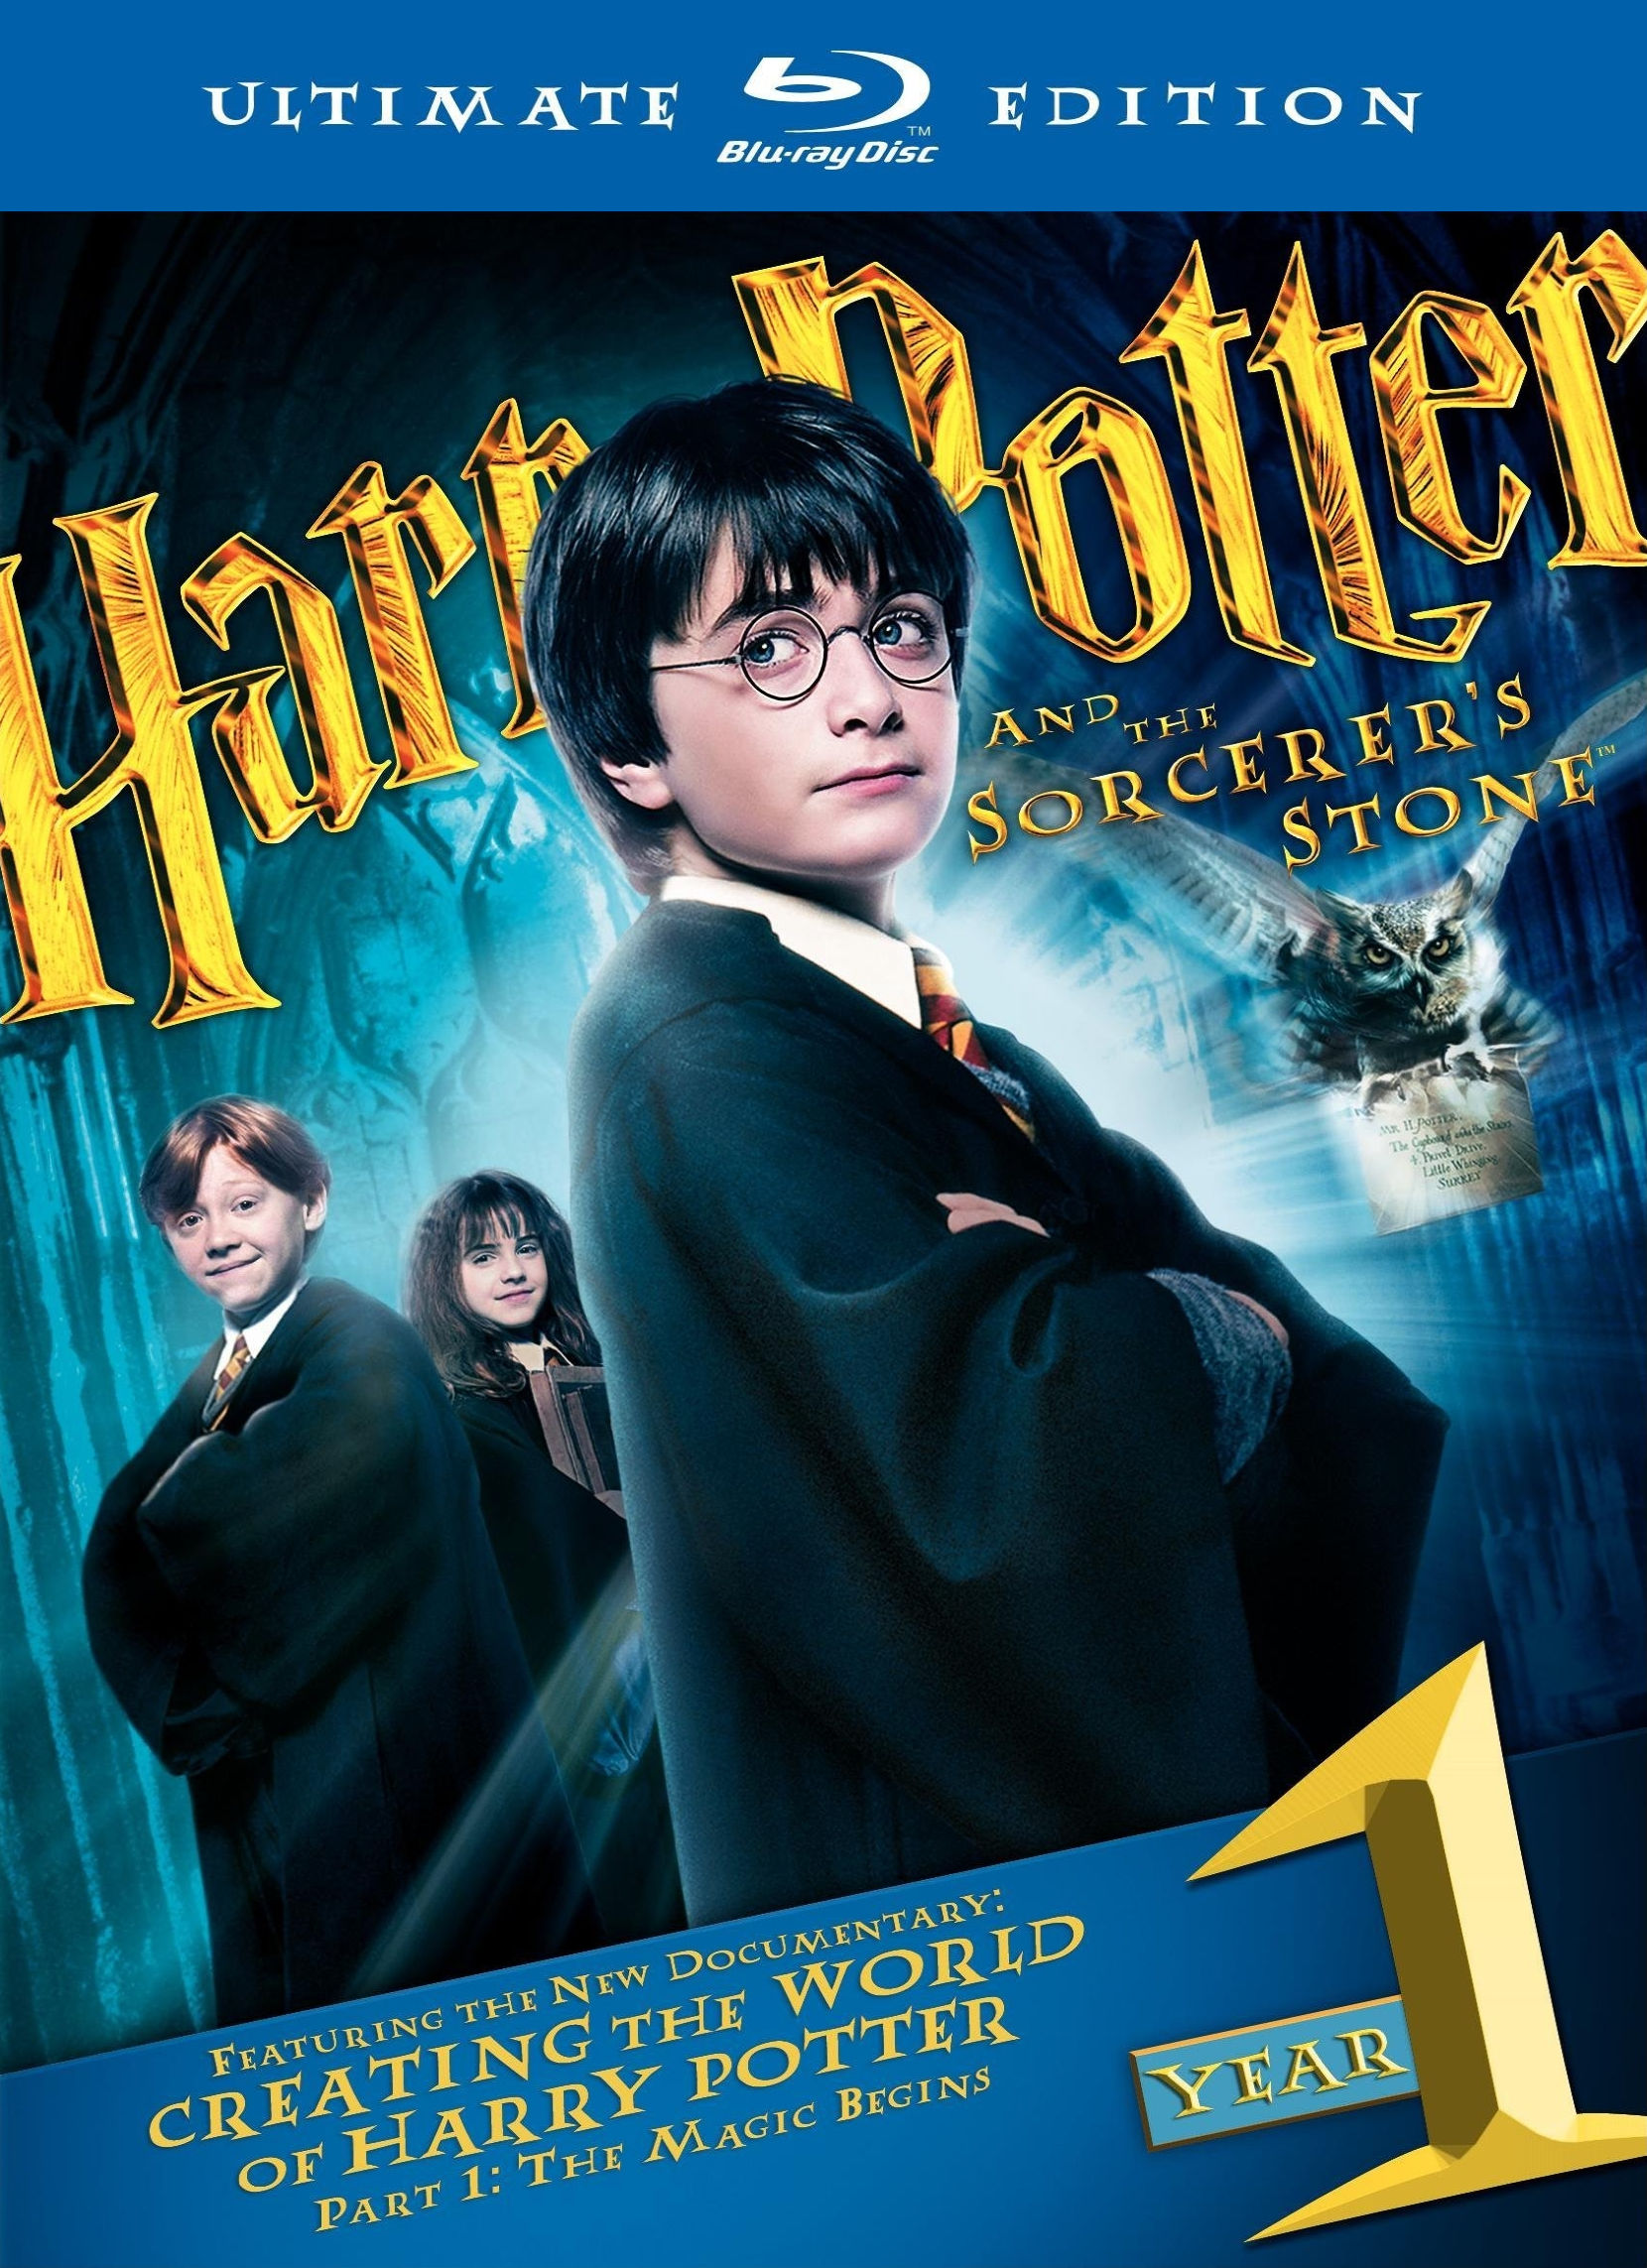 Гарри Поттер и философский камень. Обложка с сайта blu-ray.com